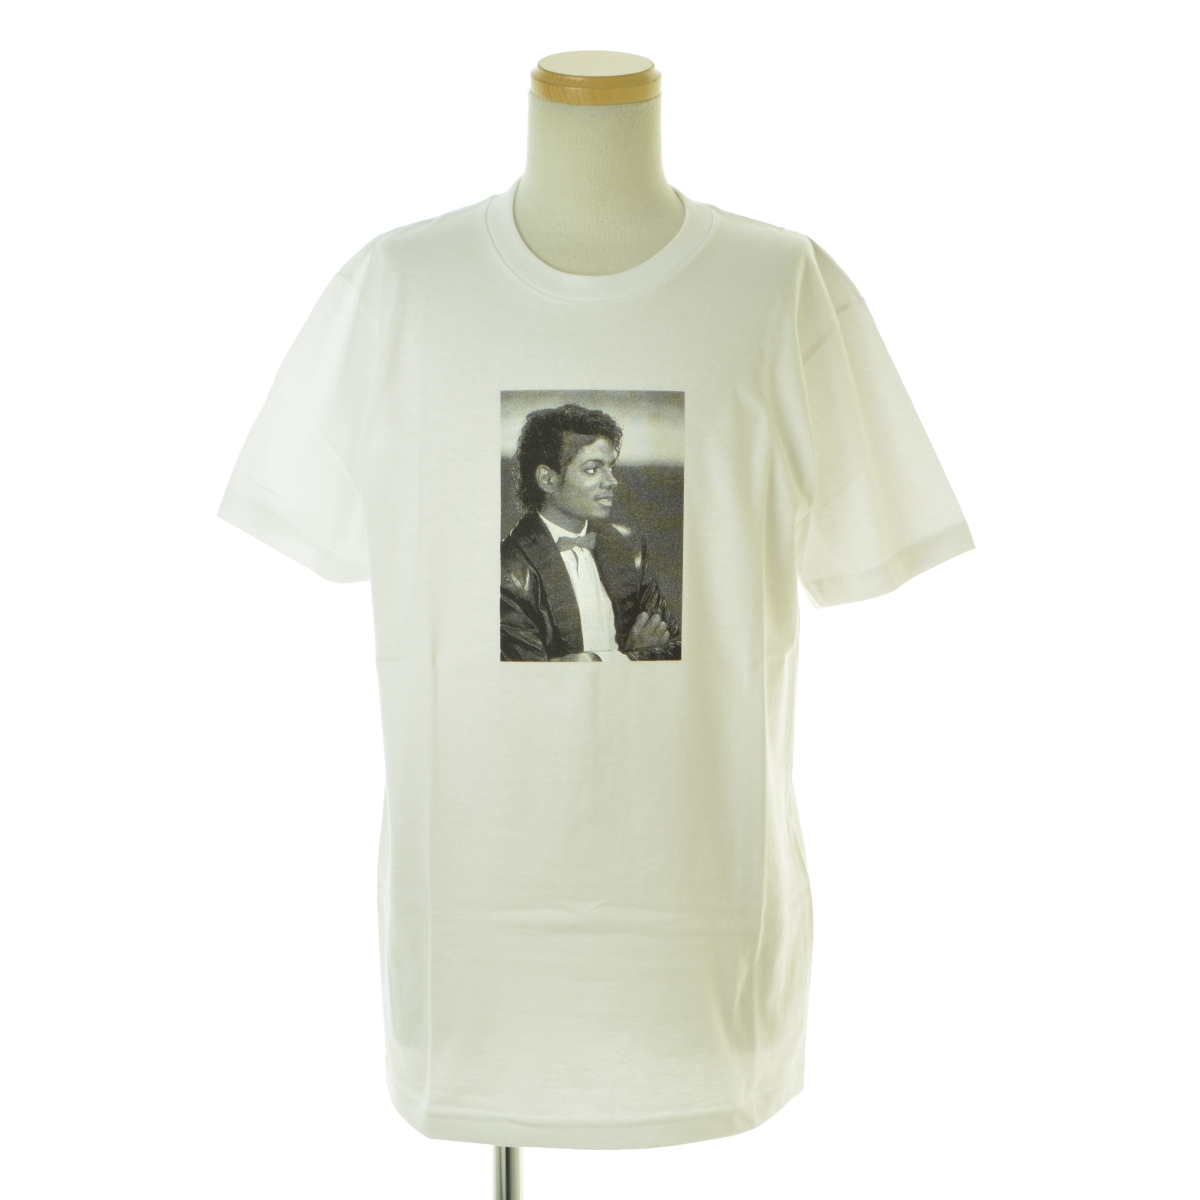 【SUPREME】17SS Michael Jackson Tee半袖Tシャツ